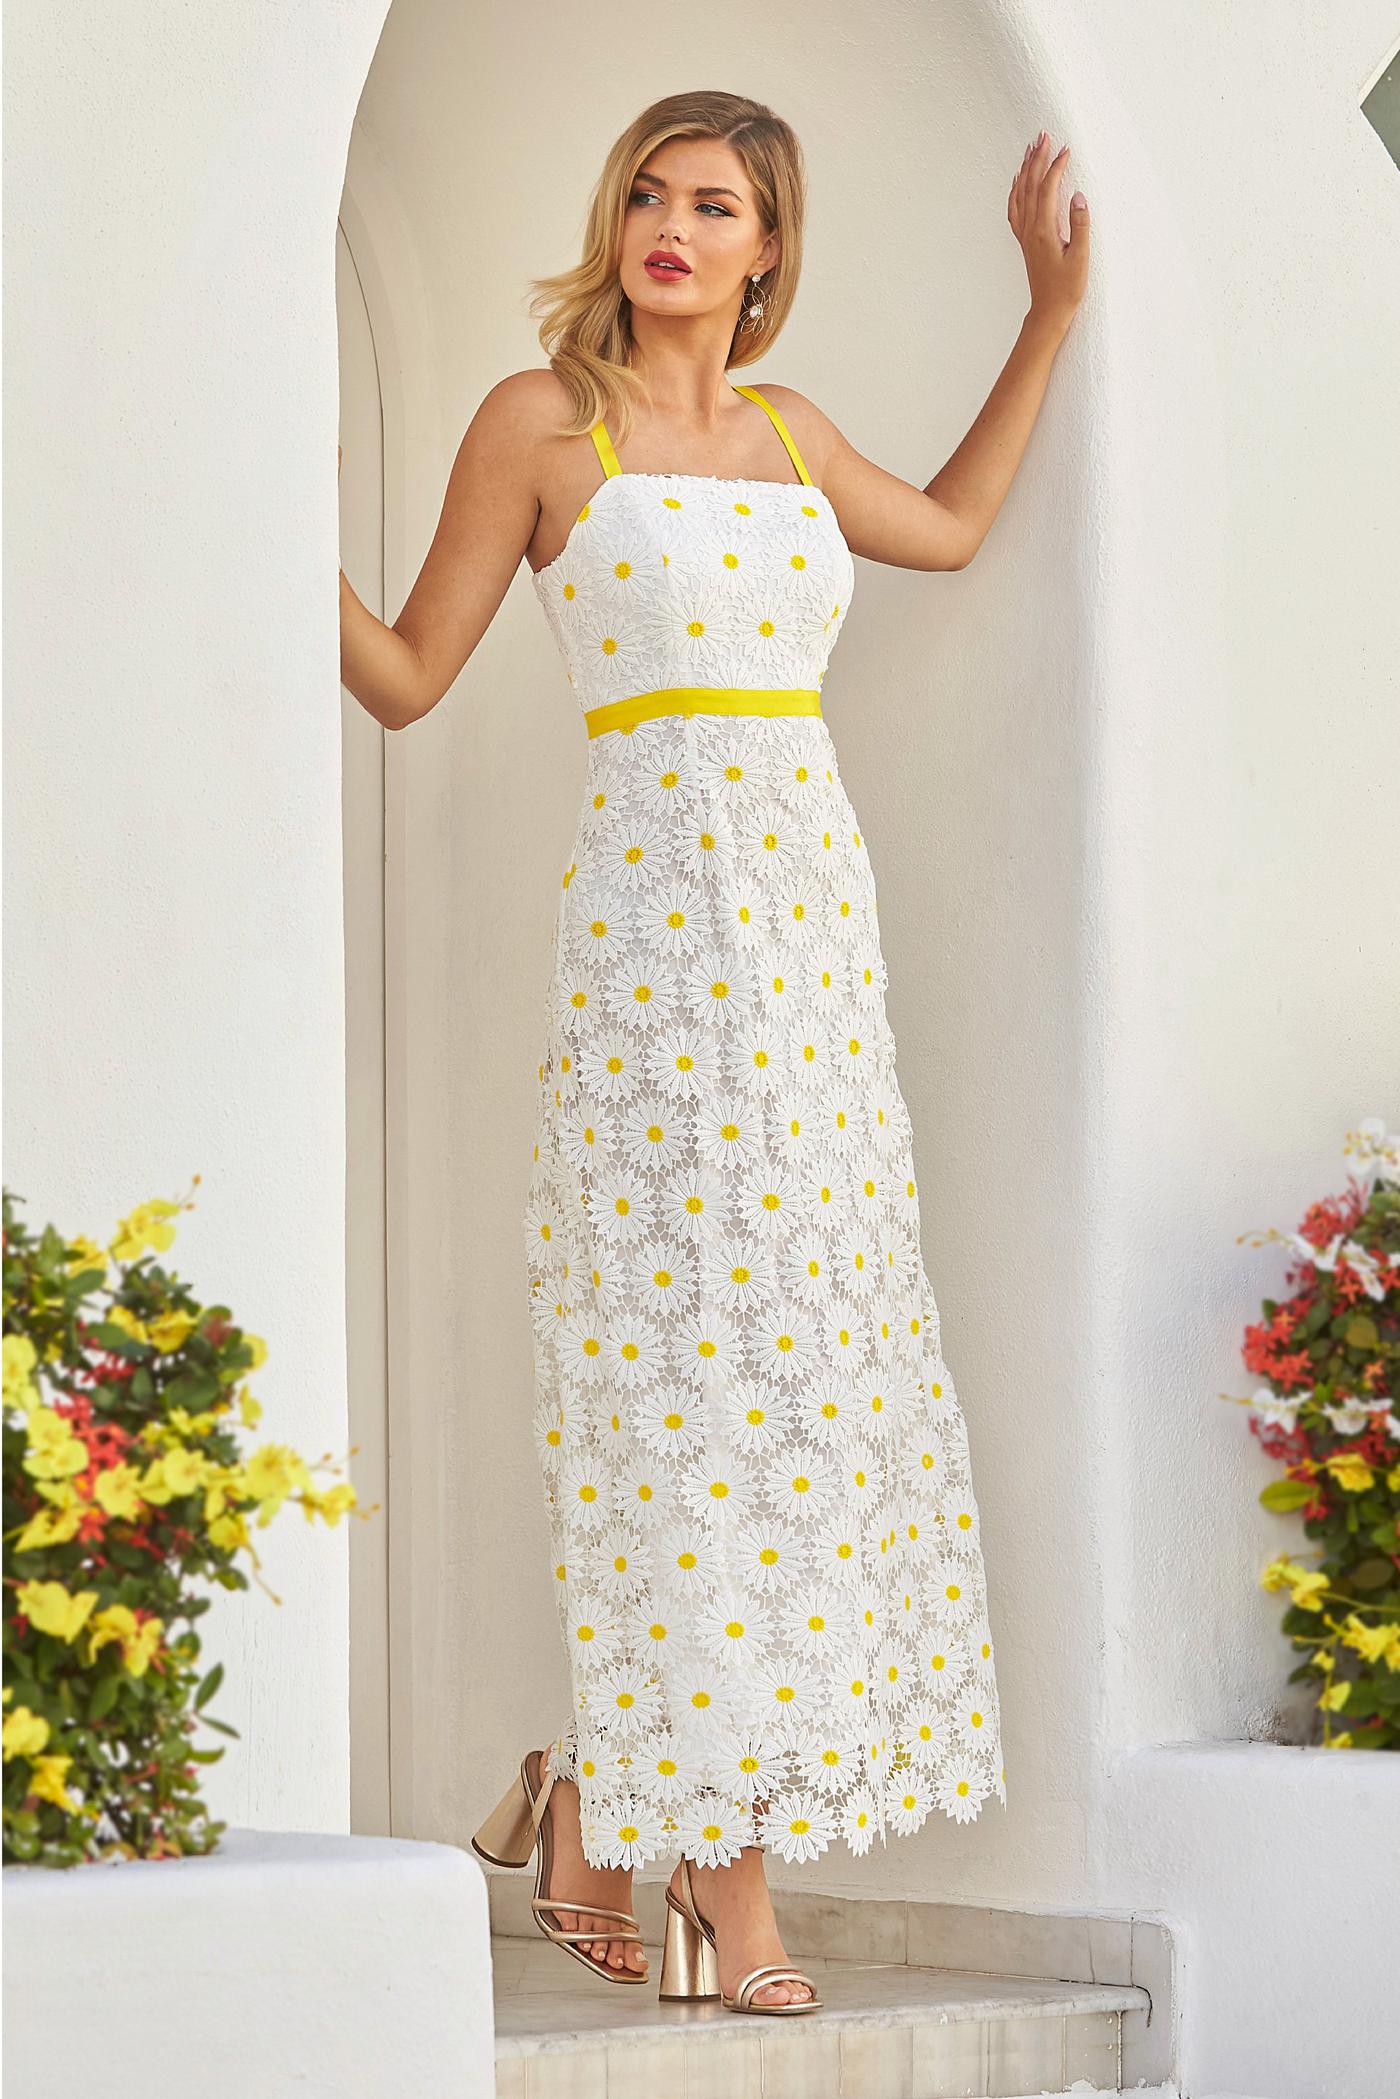 Daisy Lace Tunic Dress - White/Yellow